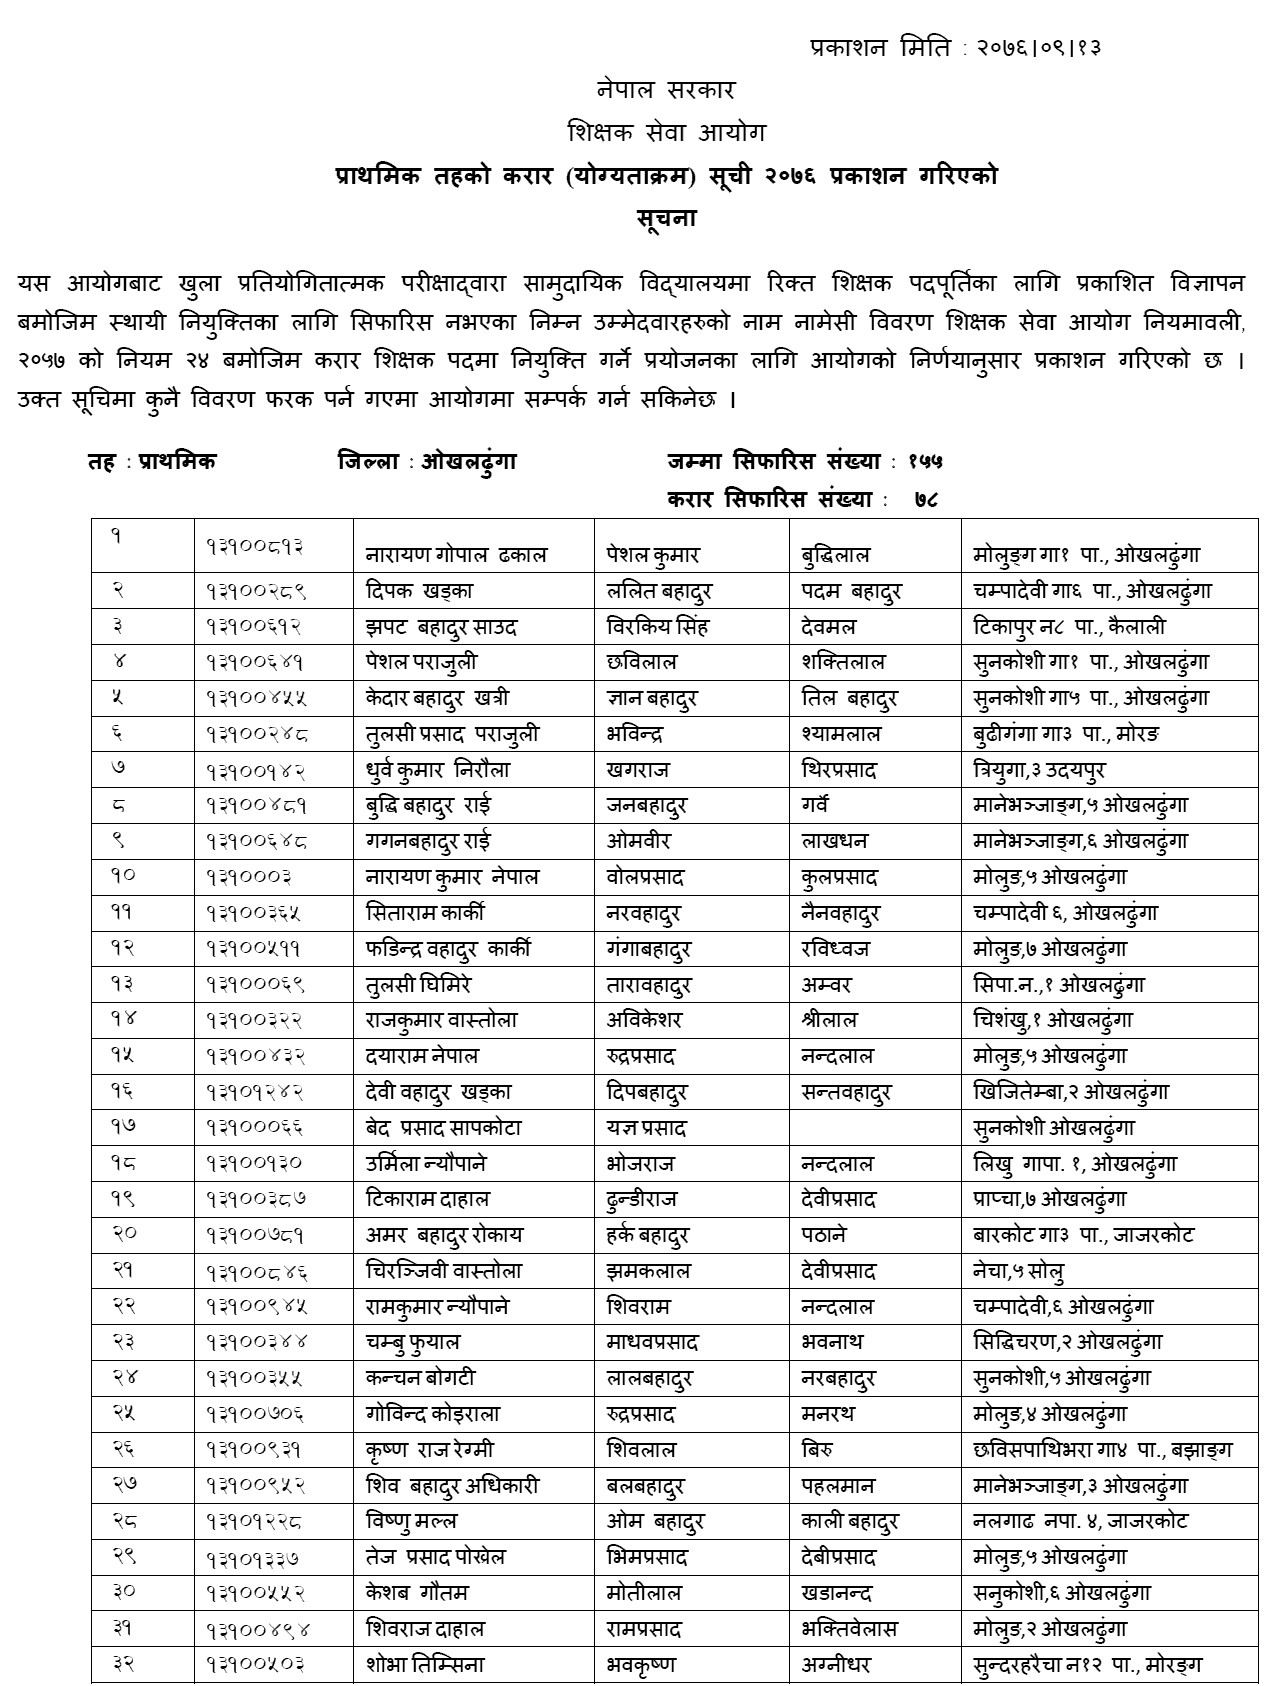 TSC Published Primary Level Contract List of Okhaldhunga